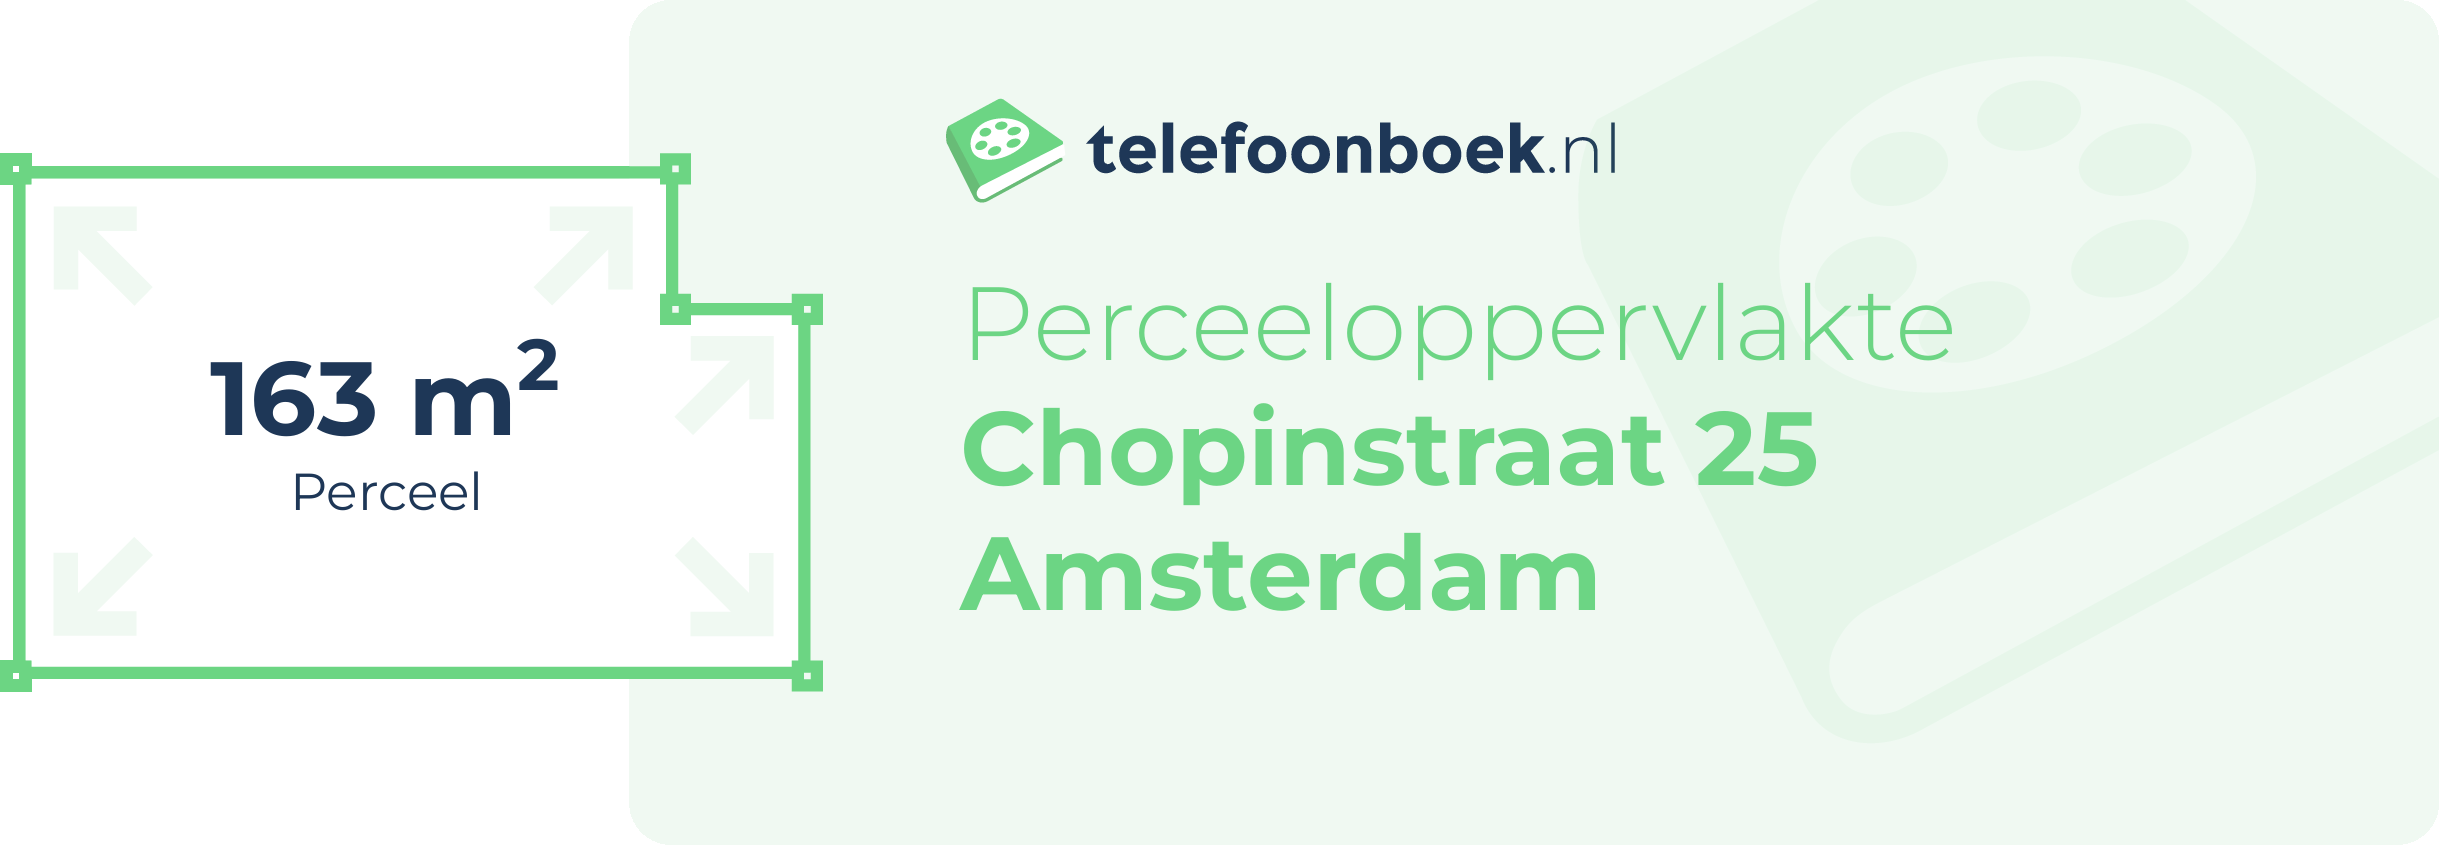 Perceeloppervlakte Chopinstraat 25 Amsterdam